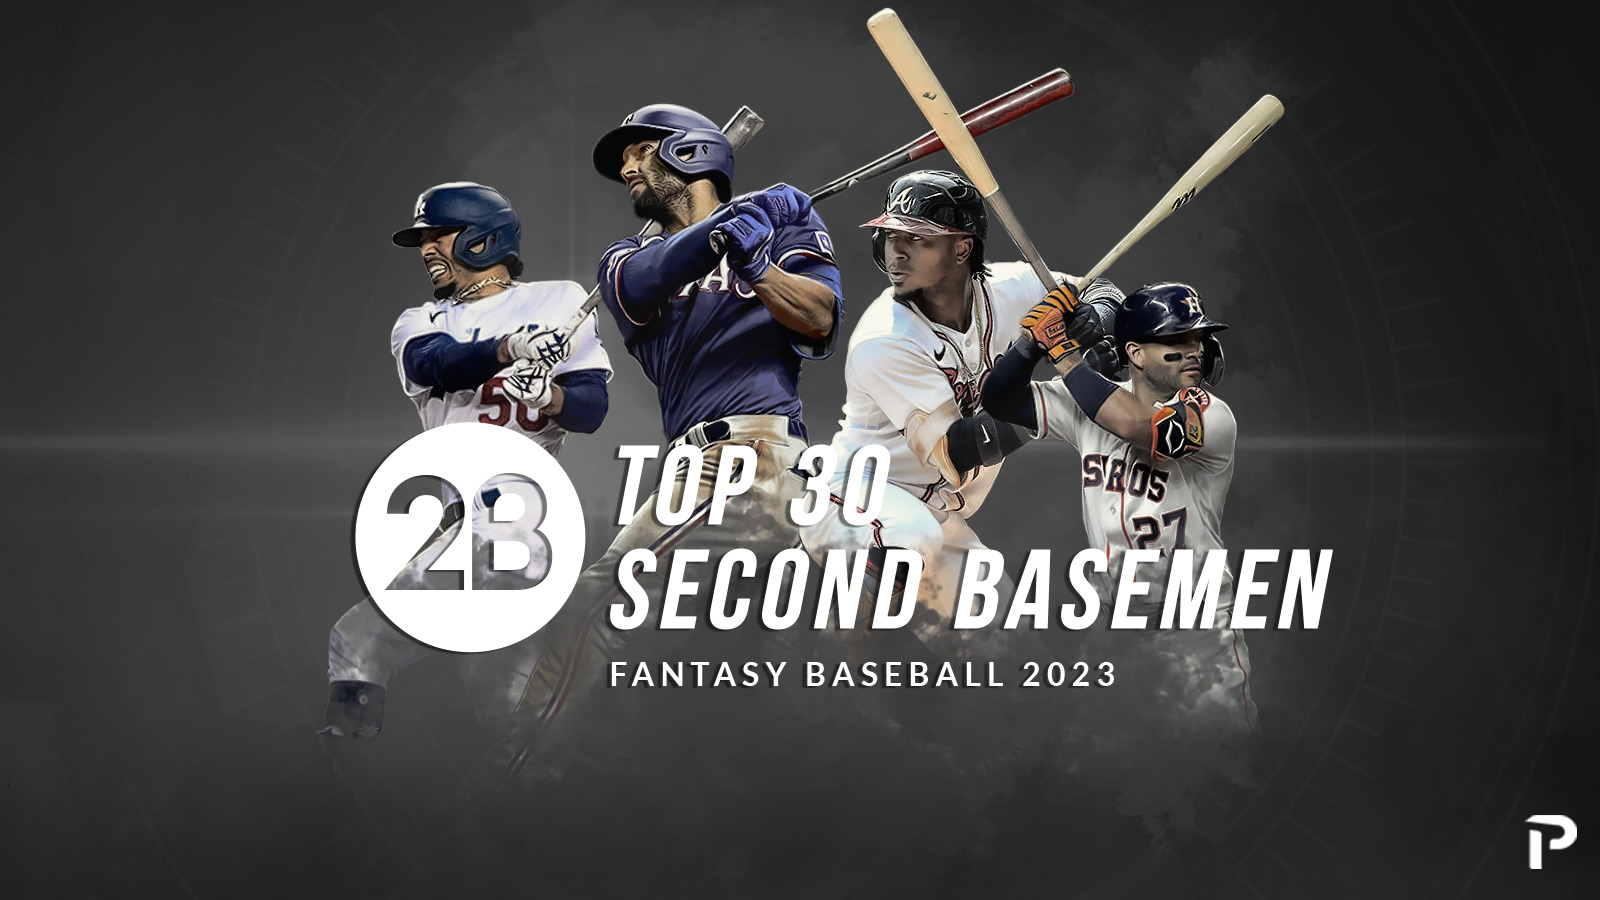 Top 30 Second Basemen for 2023 Fantasy Baseball